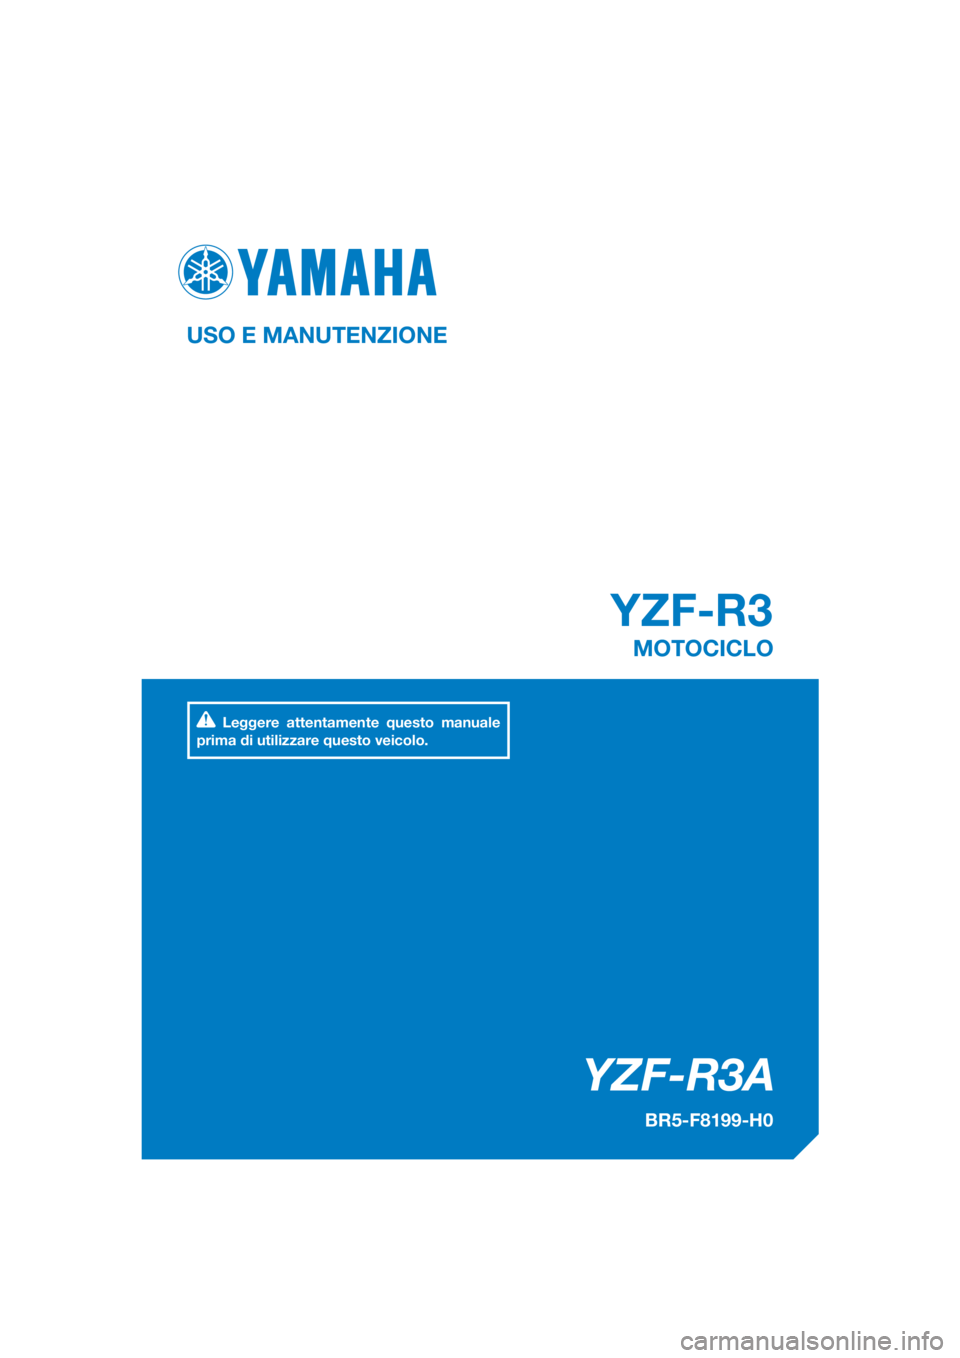 YAMAHA YZF-R3 2018  Manuale duso (in Italian) DIC183
YZF-R3A
YZF-R3
USO E MANUTENZIONE
BR5-F8199-H0
MOTOCICLO
Leggere attentamente questo manuale 
prima di utilizzare questo veicolo.
[Italian  (H)] 